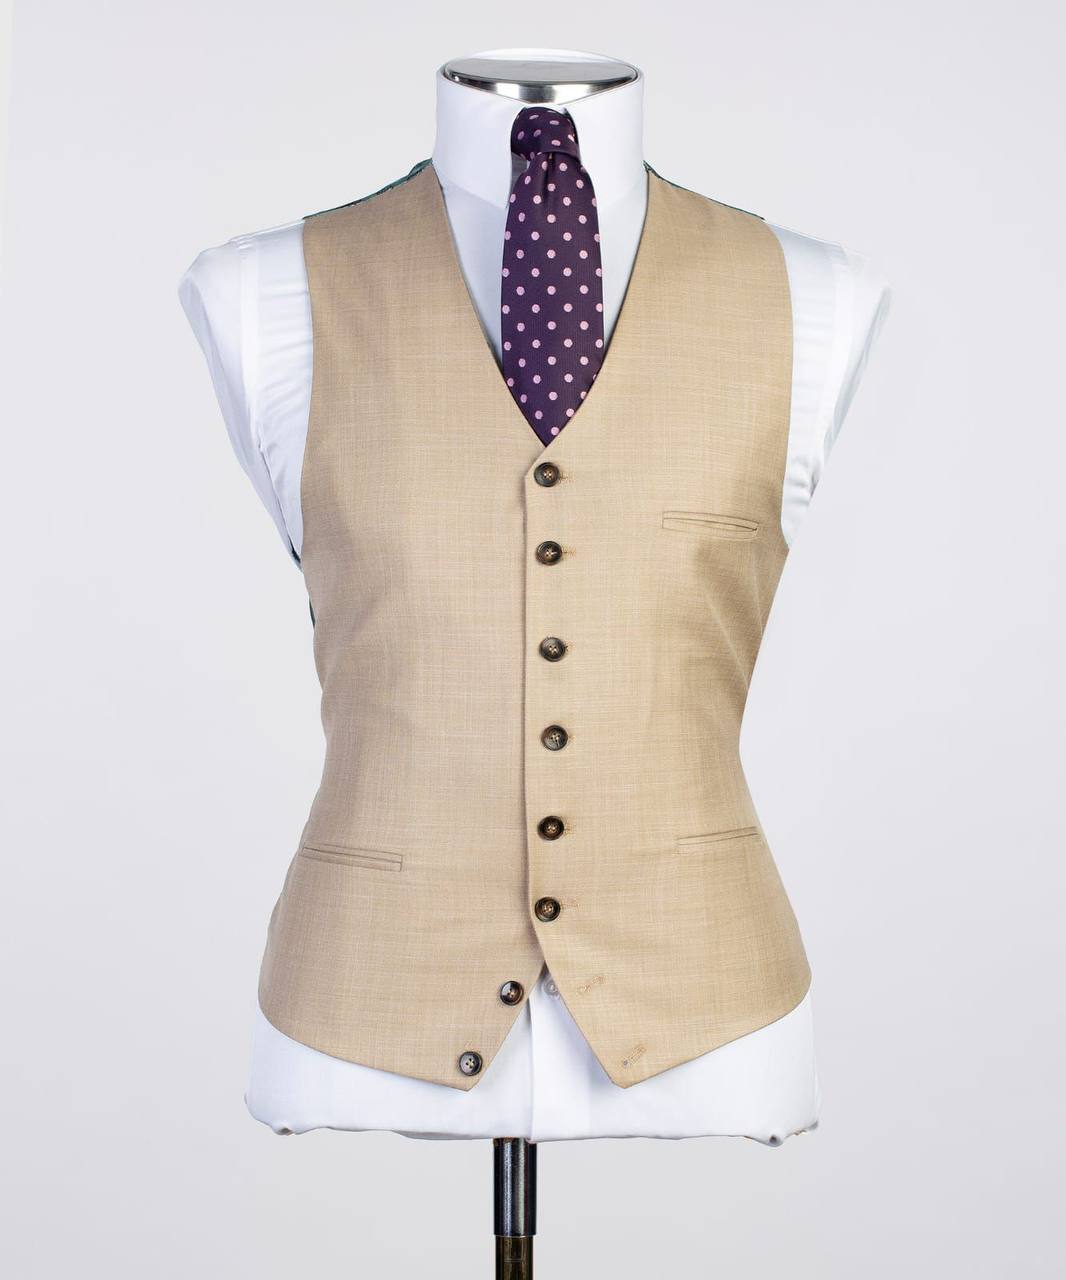 Men's 3 Piece Beige/Cream Classic Suit